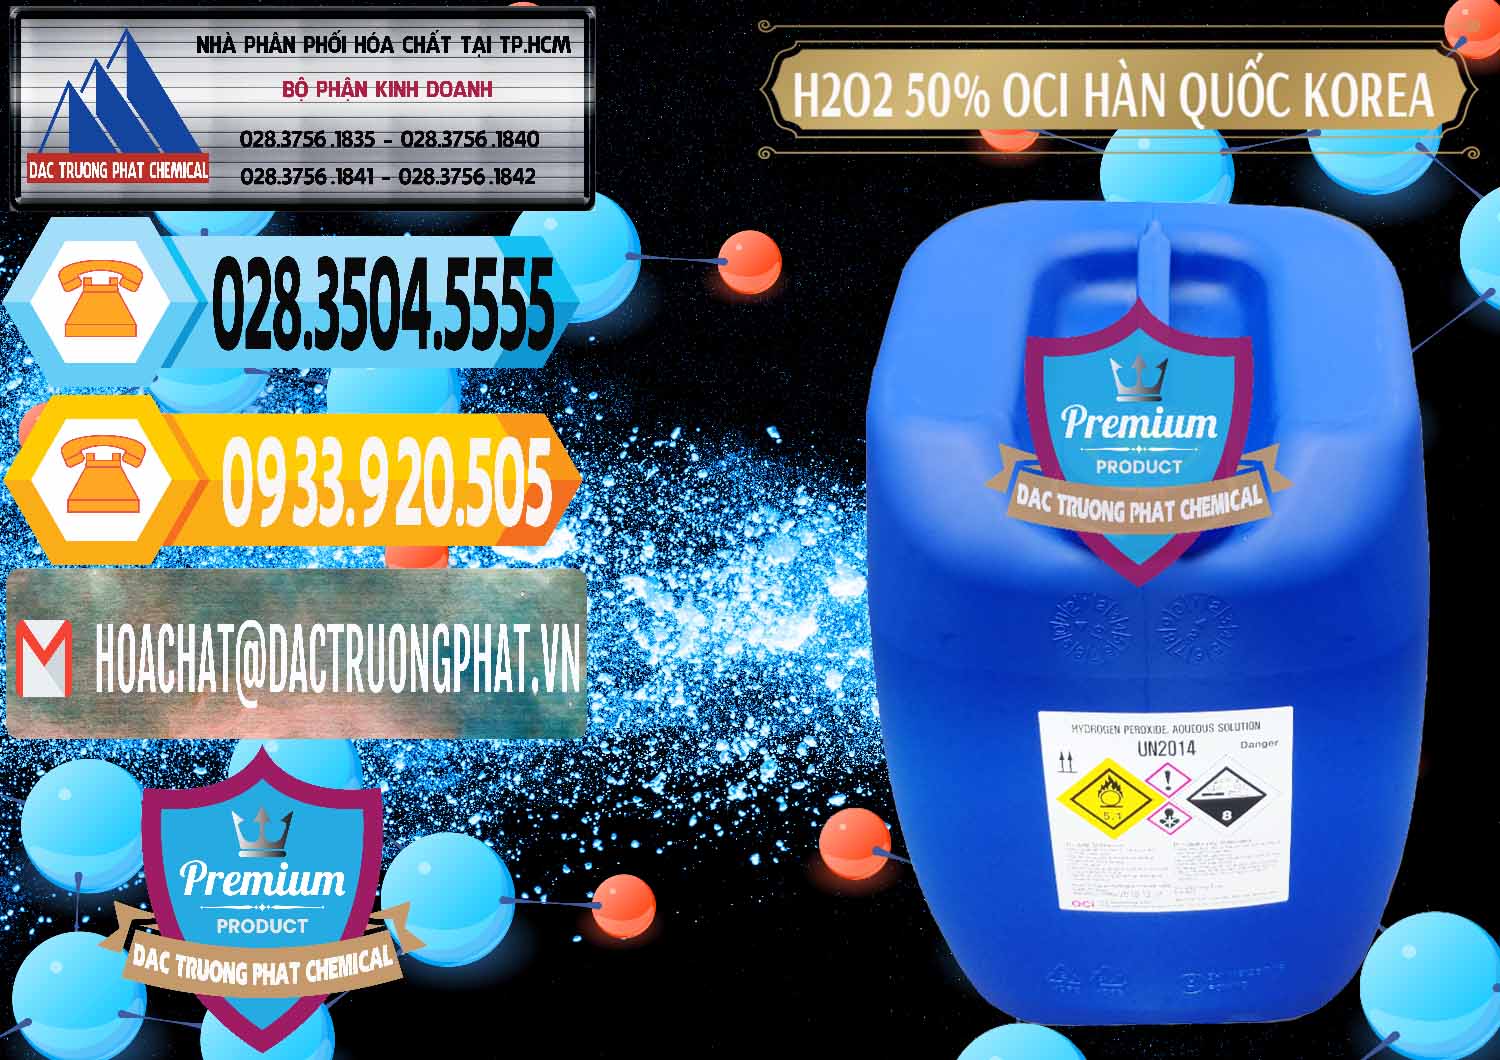 Công ty bán _ phân phối H2O2 - Hydrogen Peroxide 50% OCI Hàn Quốc Korea - 0075 - Cty bán - phân phối hóa chất tại TP.HCM - hoachattayrua.net